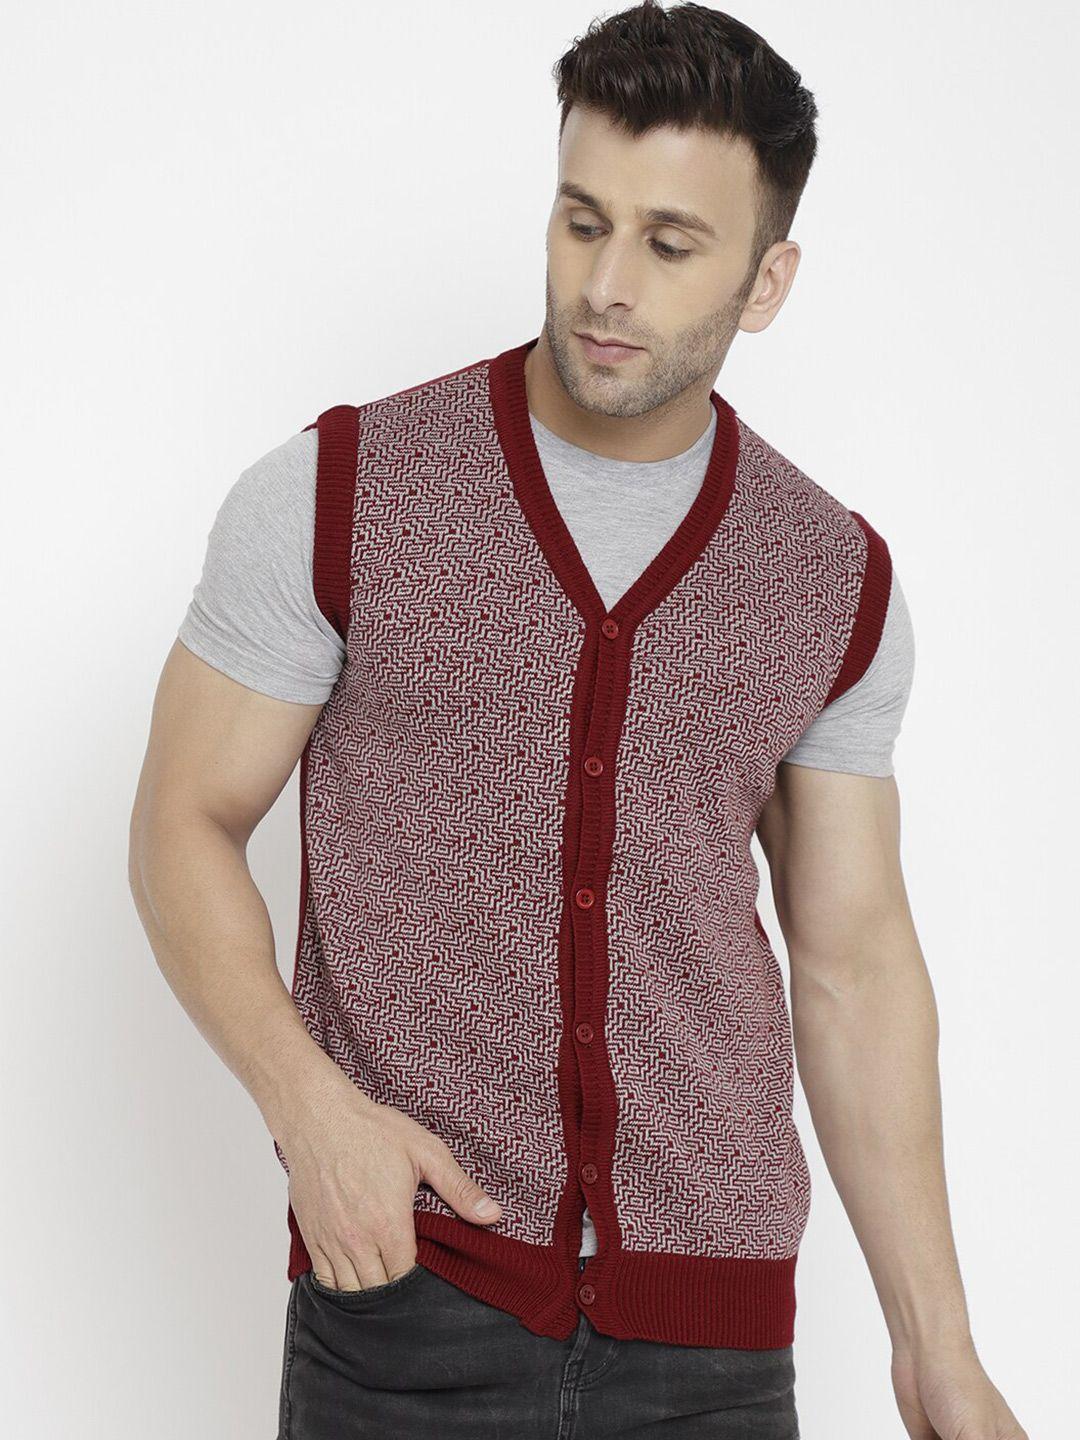 chkokko-self-design-woollen-sweater-vest